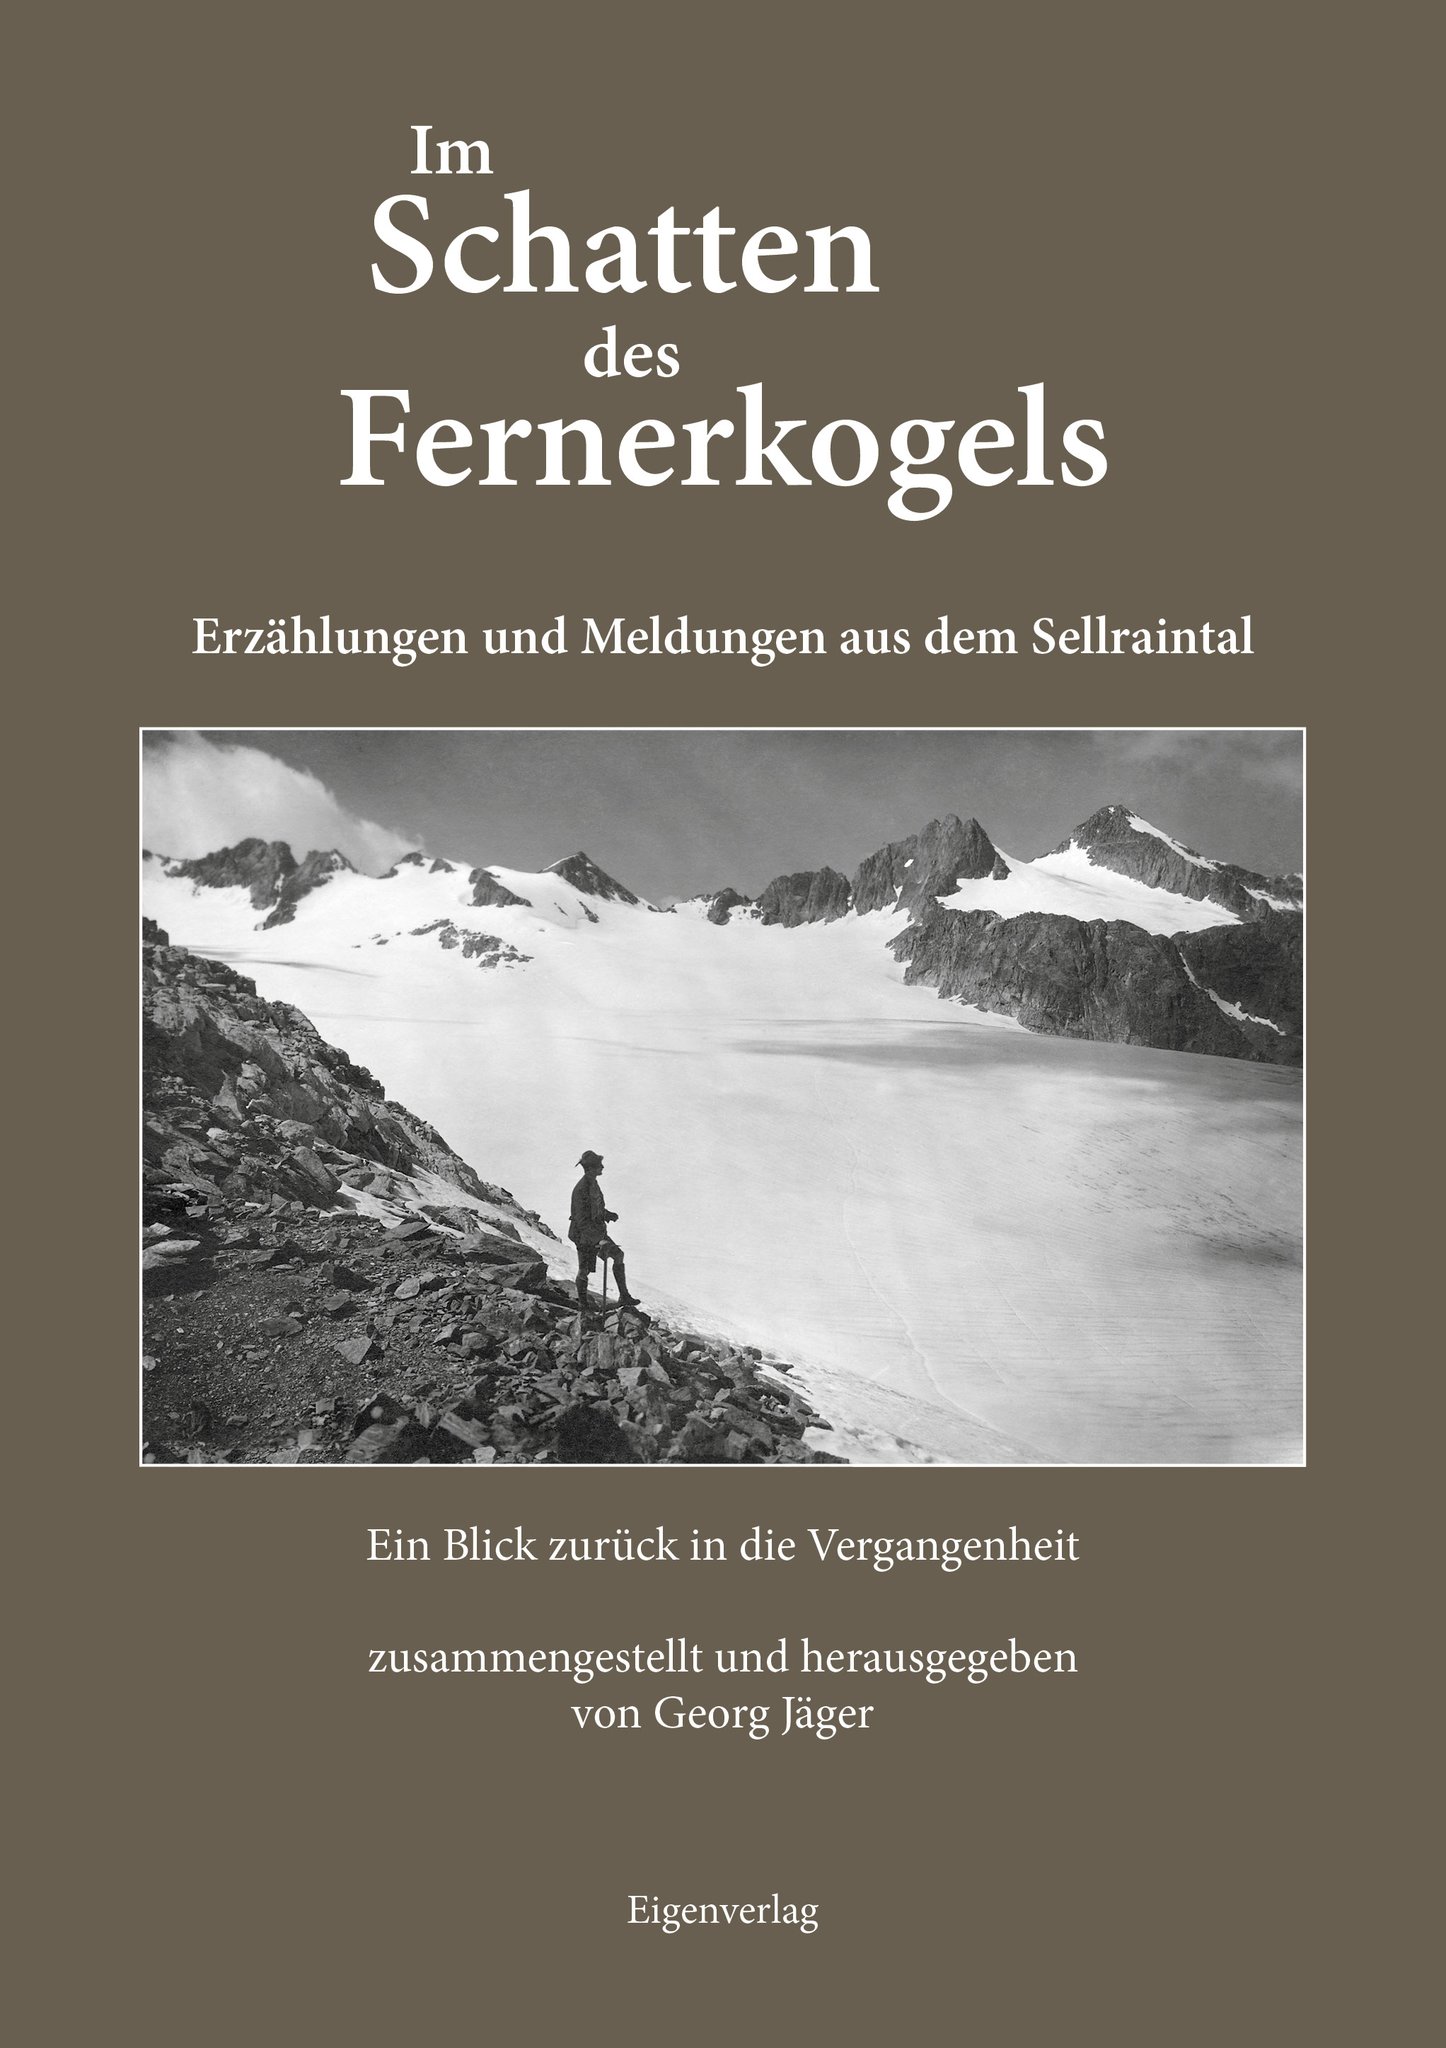 Neues Sellraintal-Buch: „Im Schatten des Fernerkogels“ von Georg Jäger